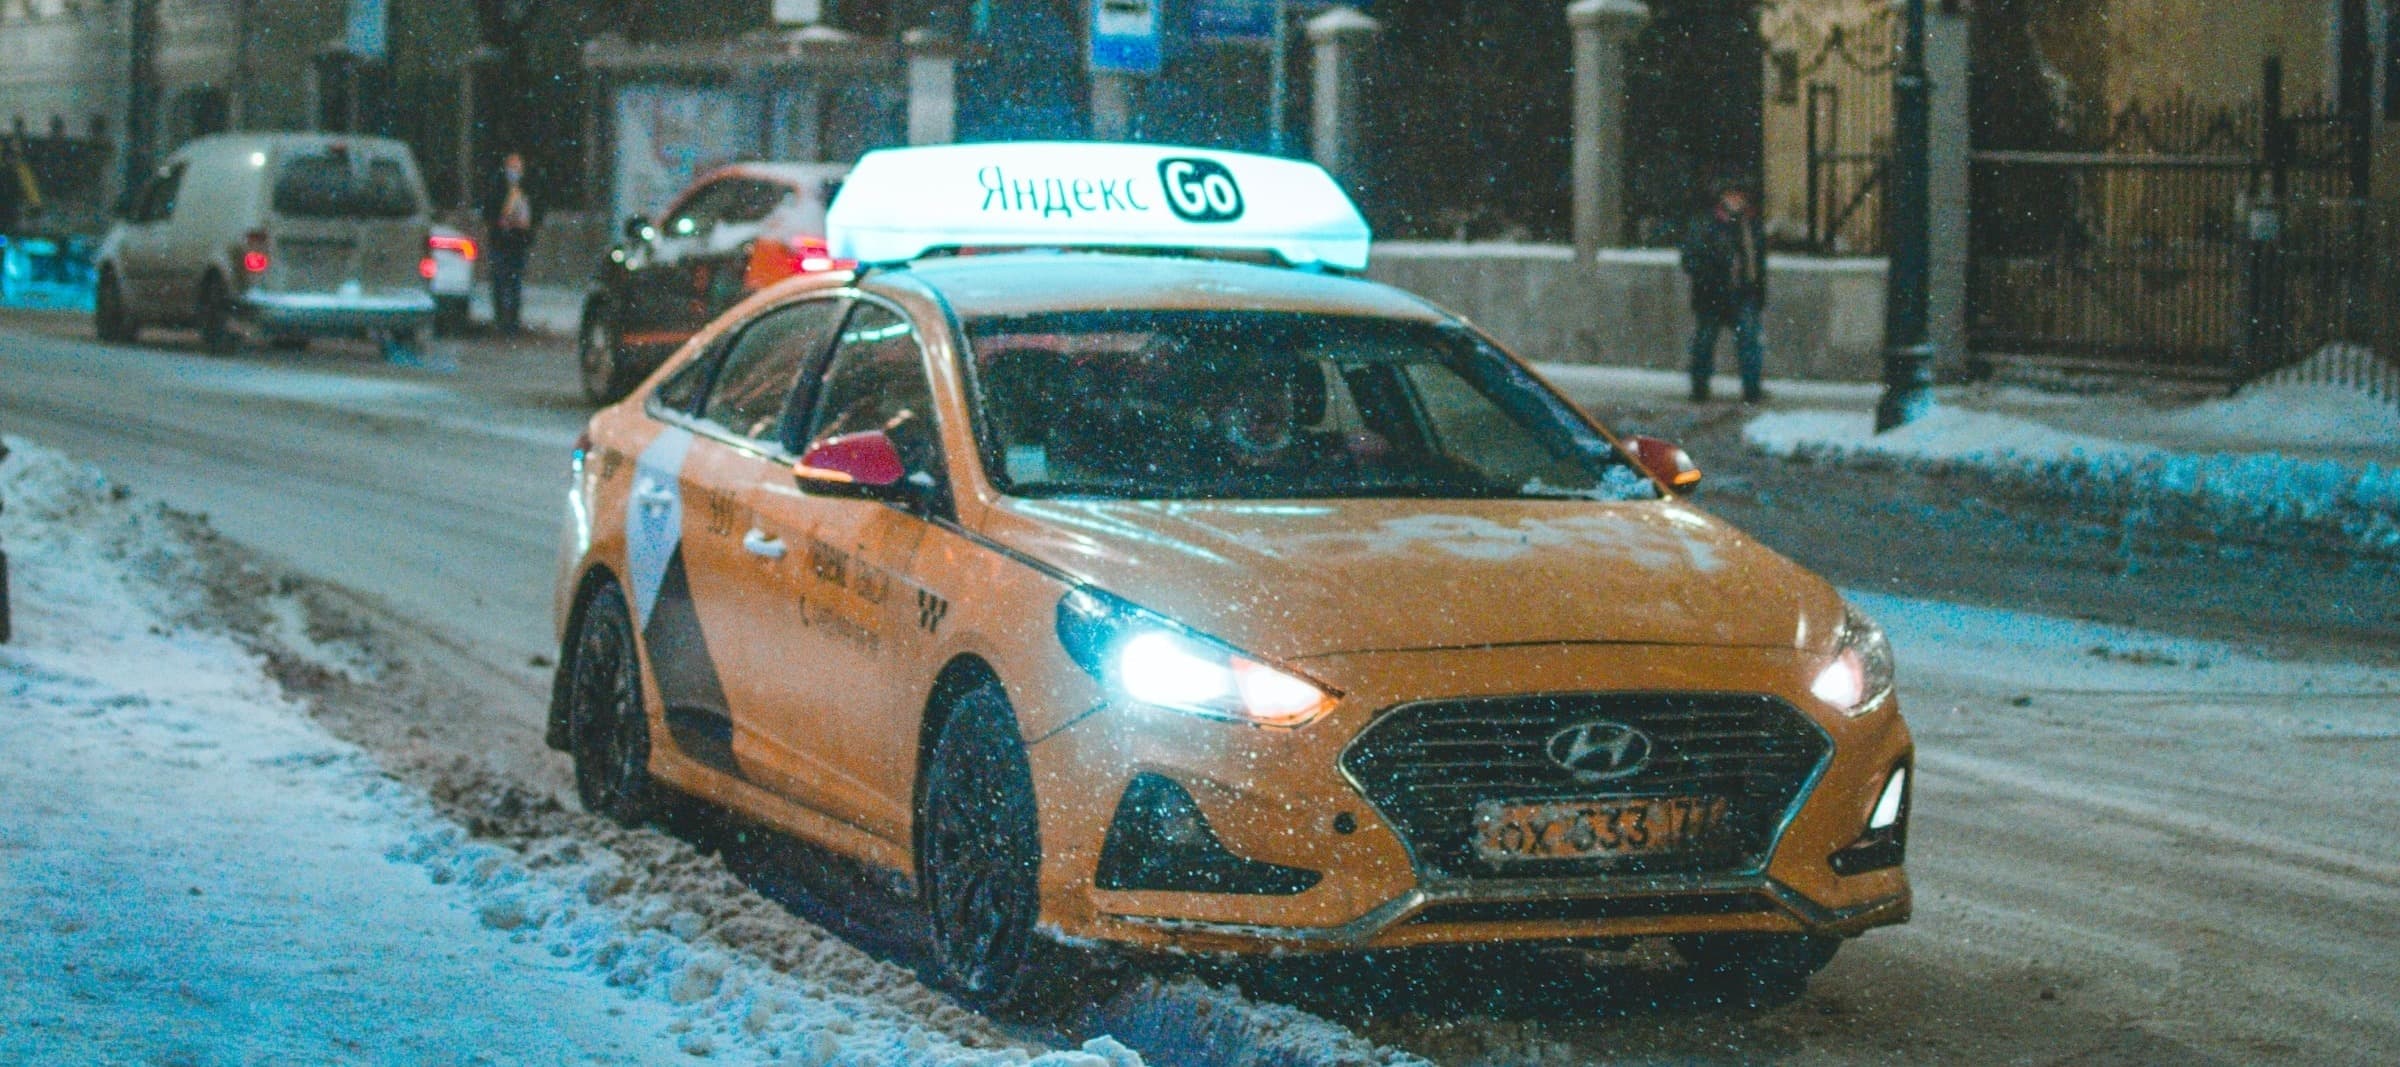 Фото новости: "«Яндекс.Такси» запустит поездки с попутчиком в Москве и Санкт-Петербурге"